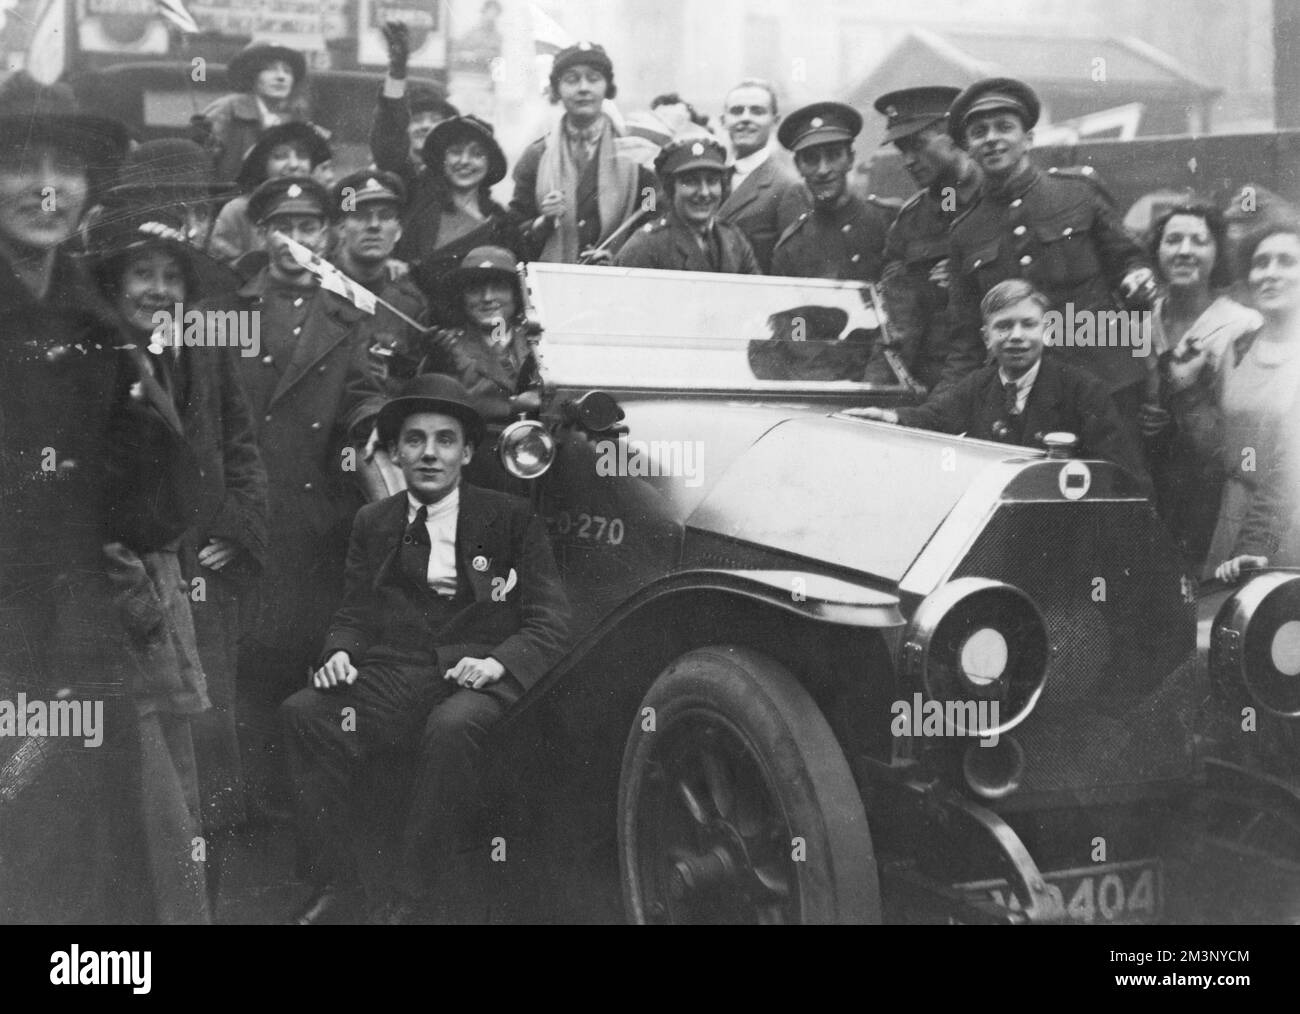 Eine glückliche Menschenmenge von Männern und Frauen, einige in Militäruniform, andere in Zivilisten, in London am Waffenstillstandstag, 11.. November 1918, um ein Auto herum. Datum: 11.. November 1918 Stockfoto